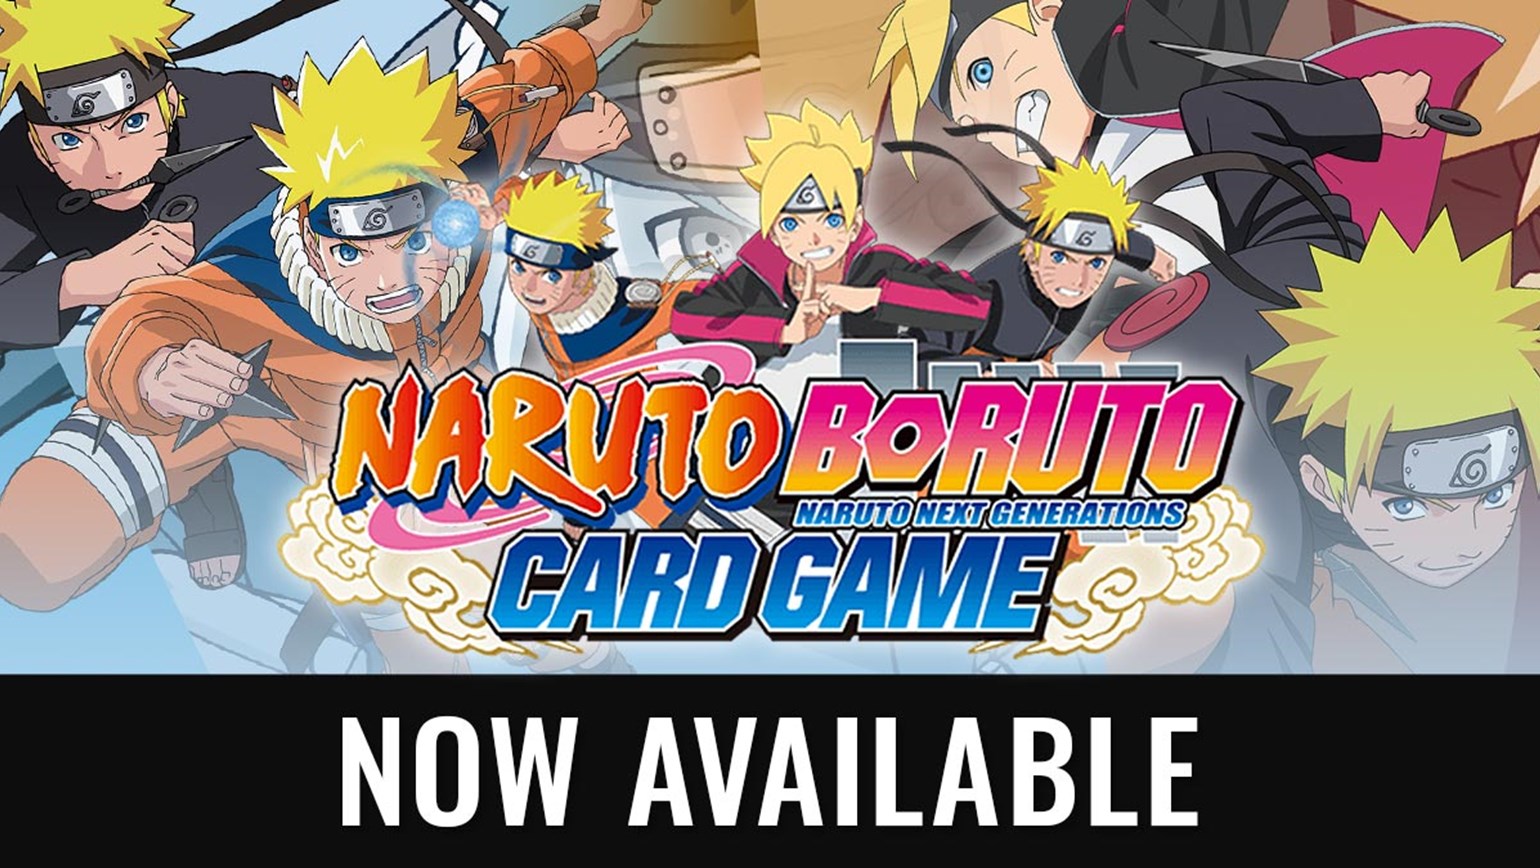 Boruto: Naruto Next Generations – The Board Game, Board Game